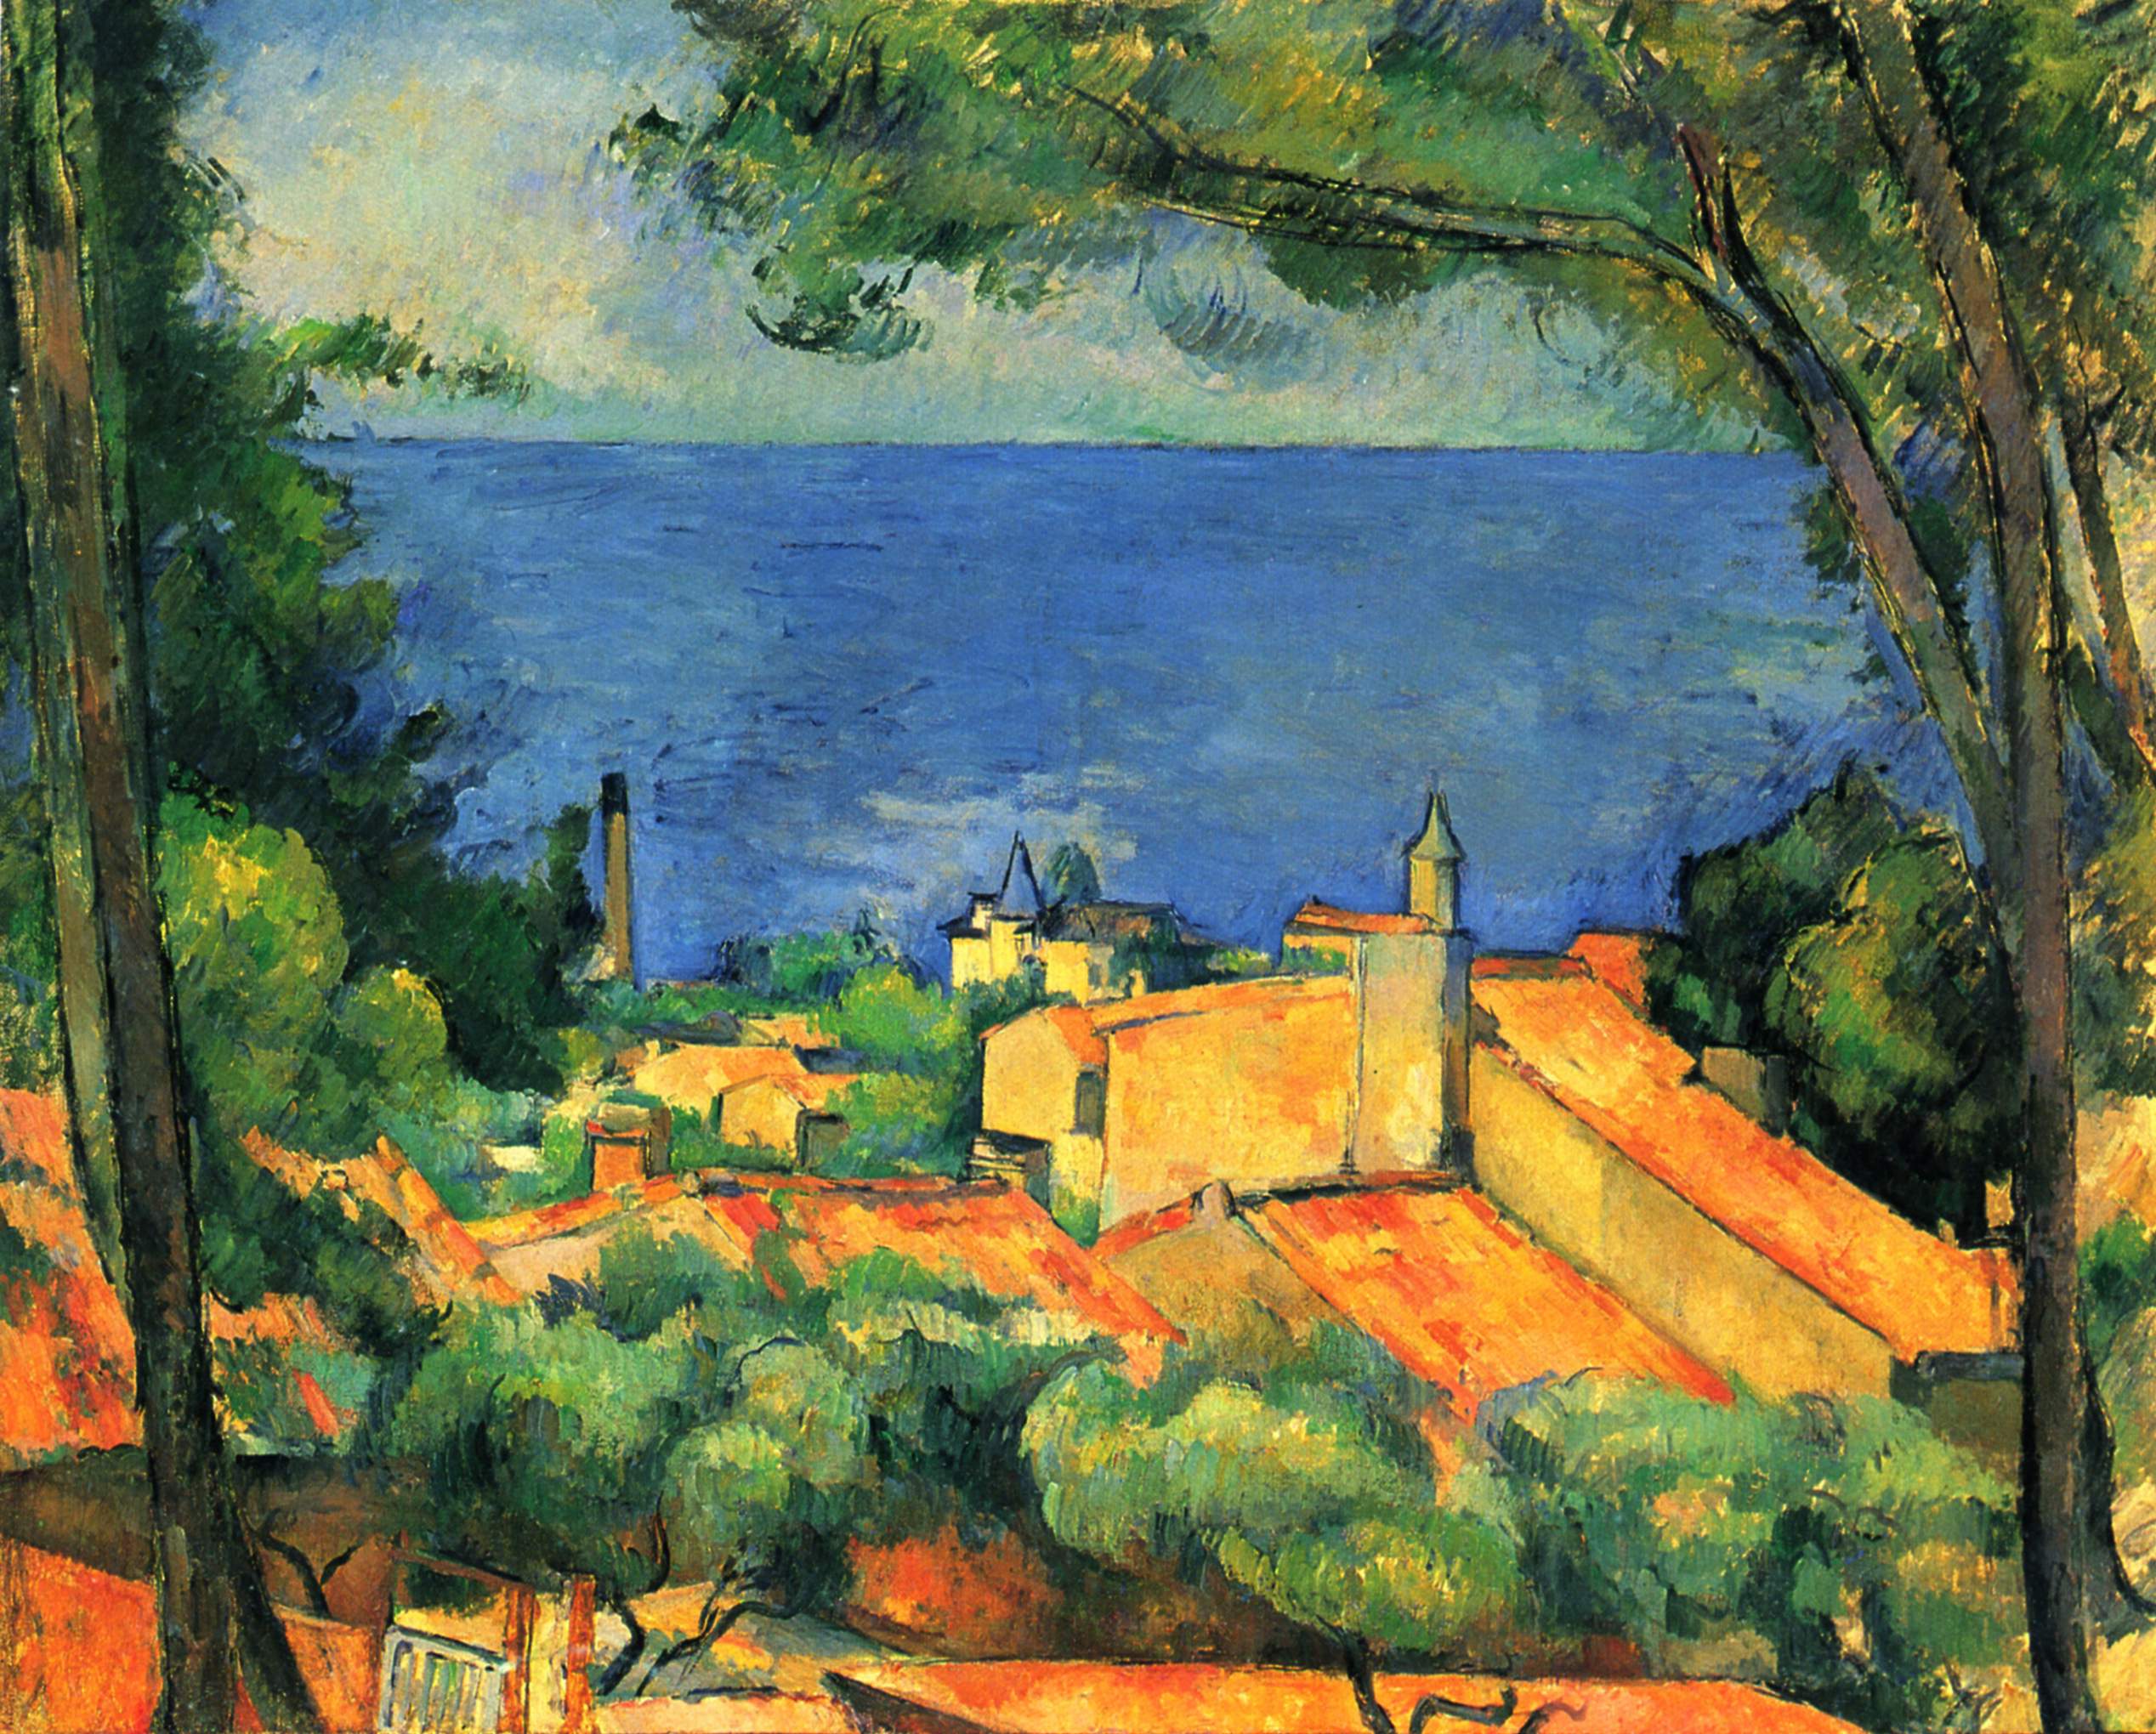 Paul Cézanne, L'Estaque